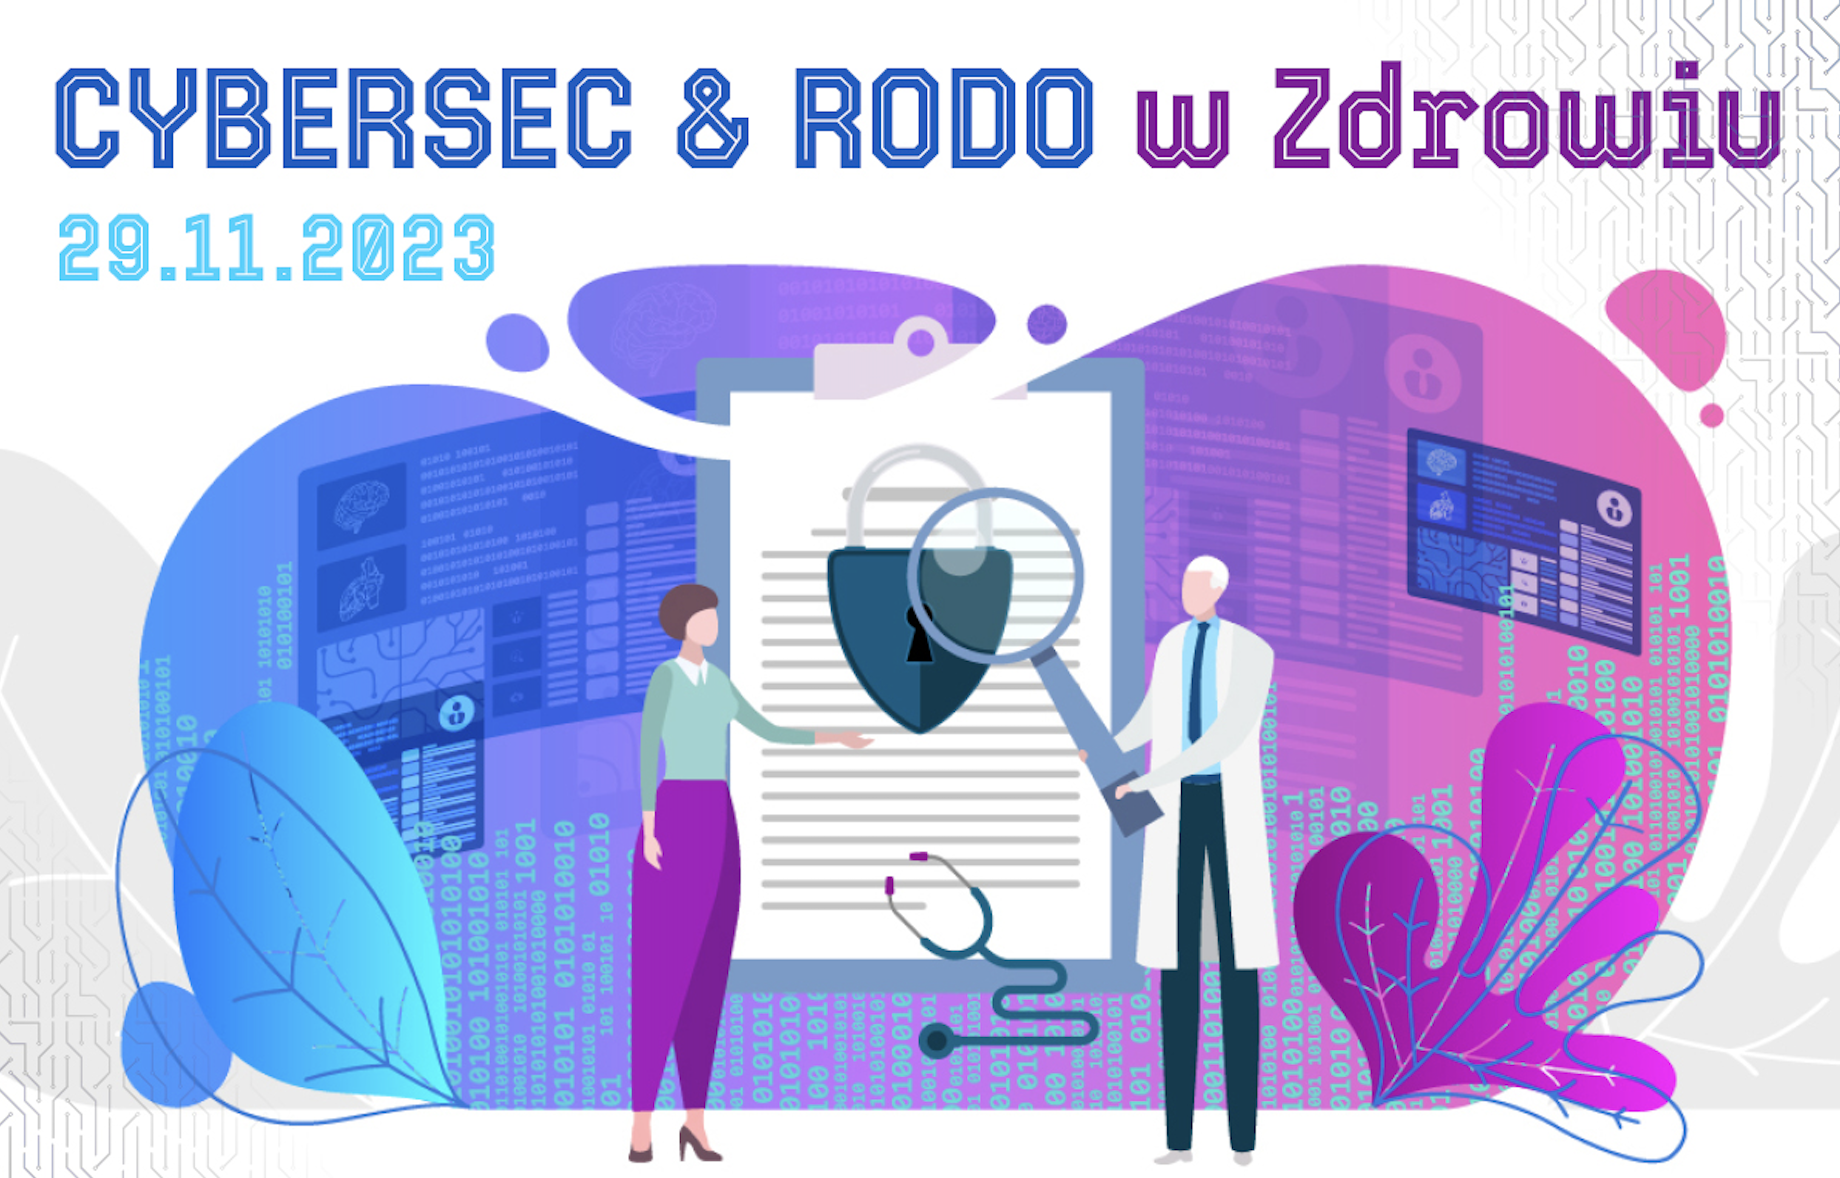 Od edukacji do praktyki: Konferencja CYBERSEC & RODO w Zdrowiu jako odpowiedź na potrzeby branży medycznej w zakresie bezpieczeństwa cybernetycznego i ochrony danych